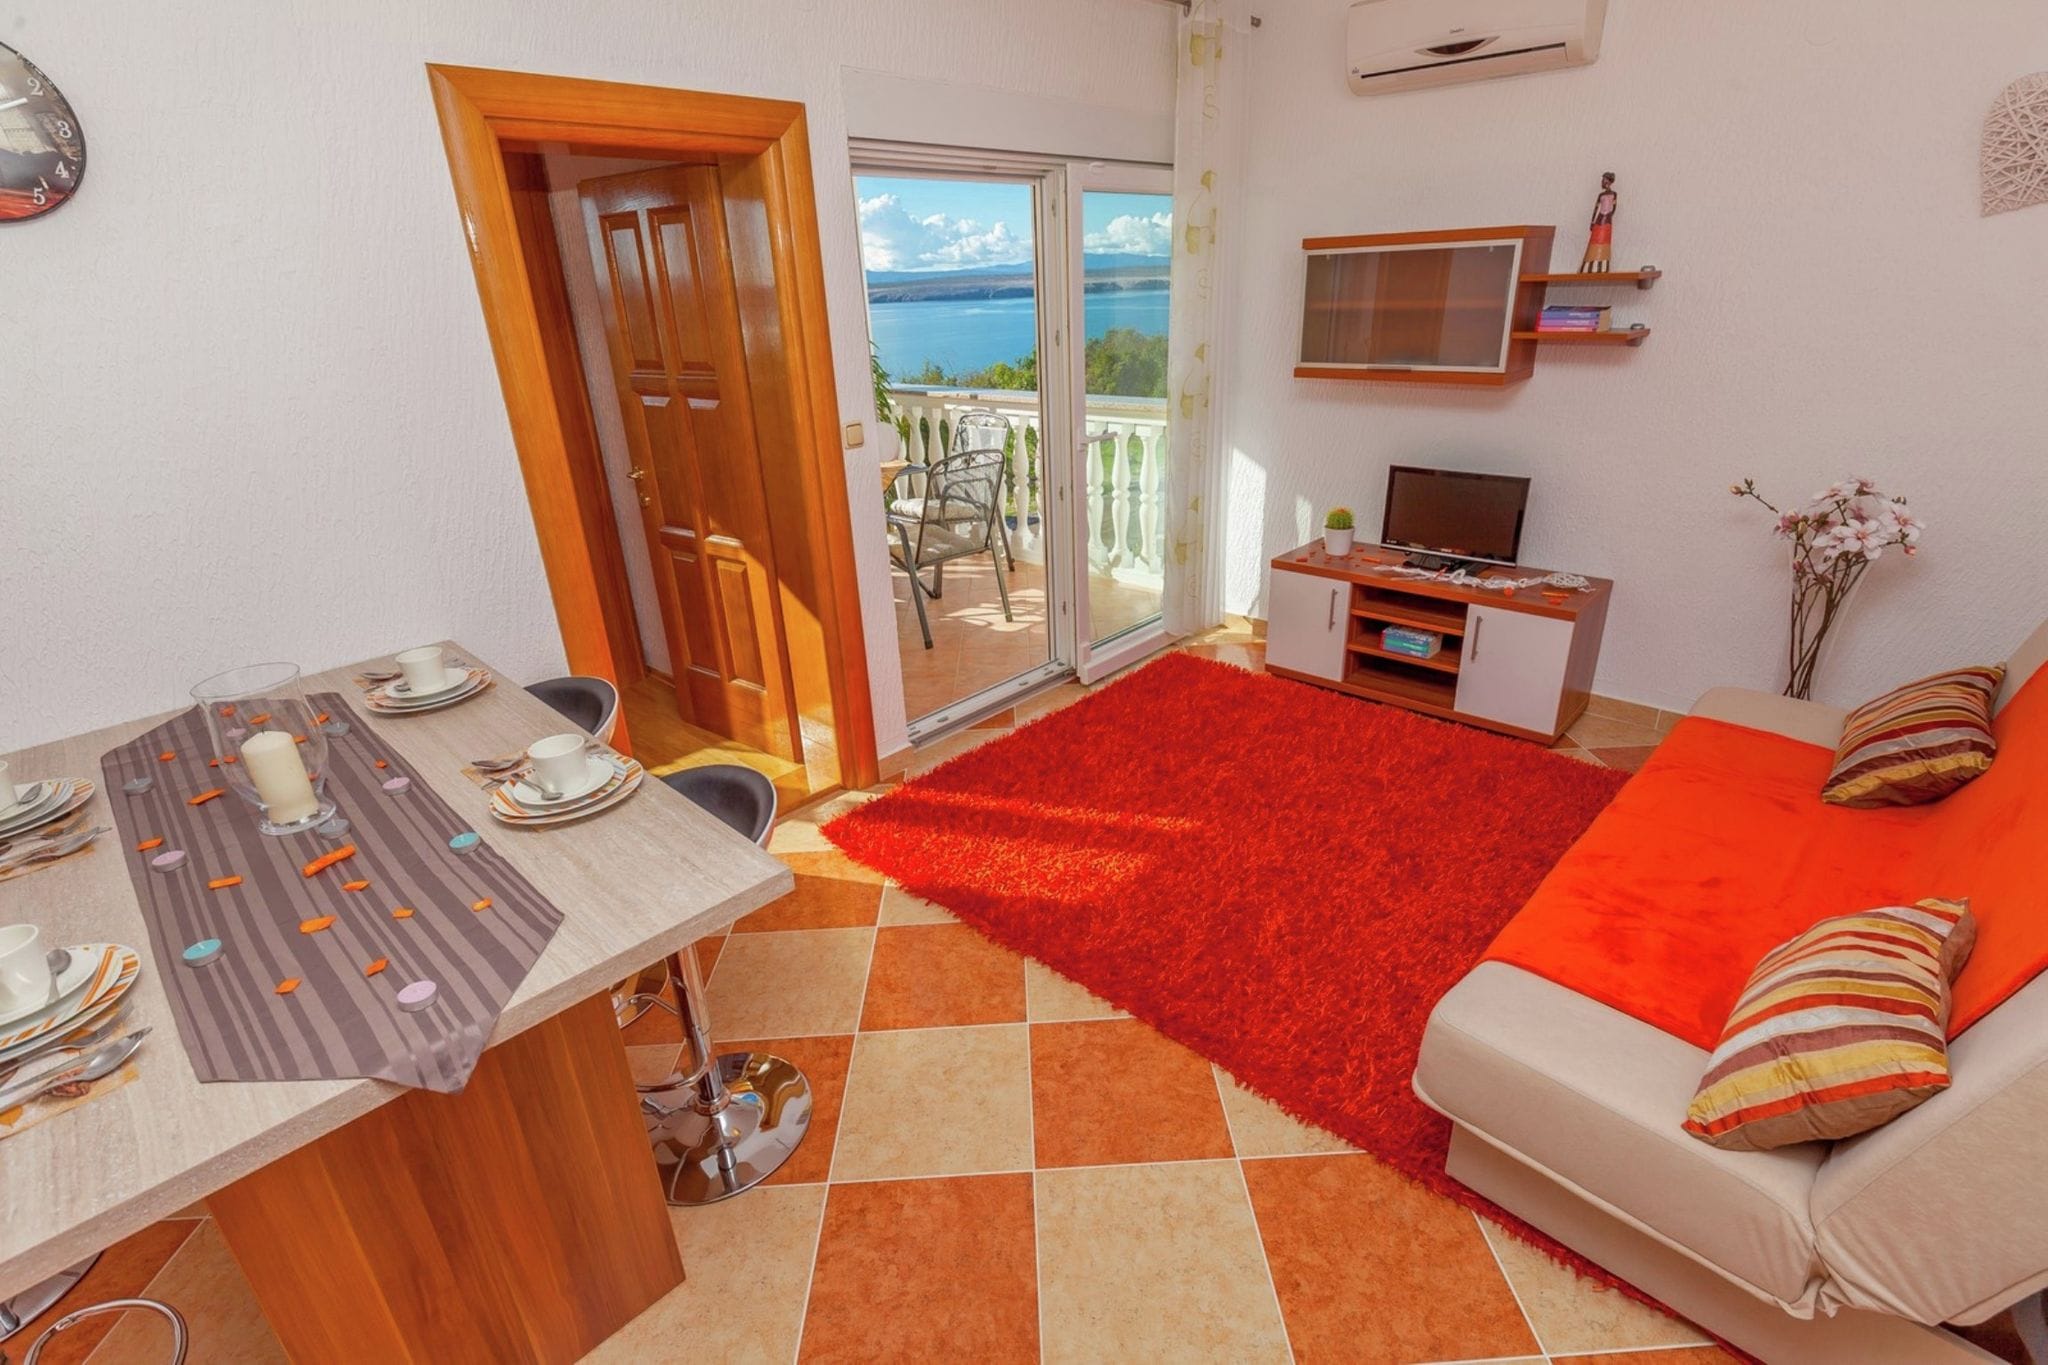 Schattige appartement met terras en uitzicht op zee, 300m afstand van het strand